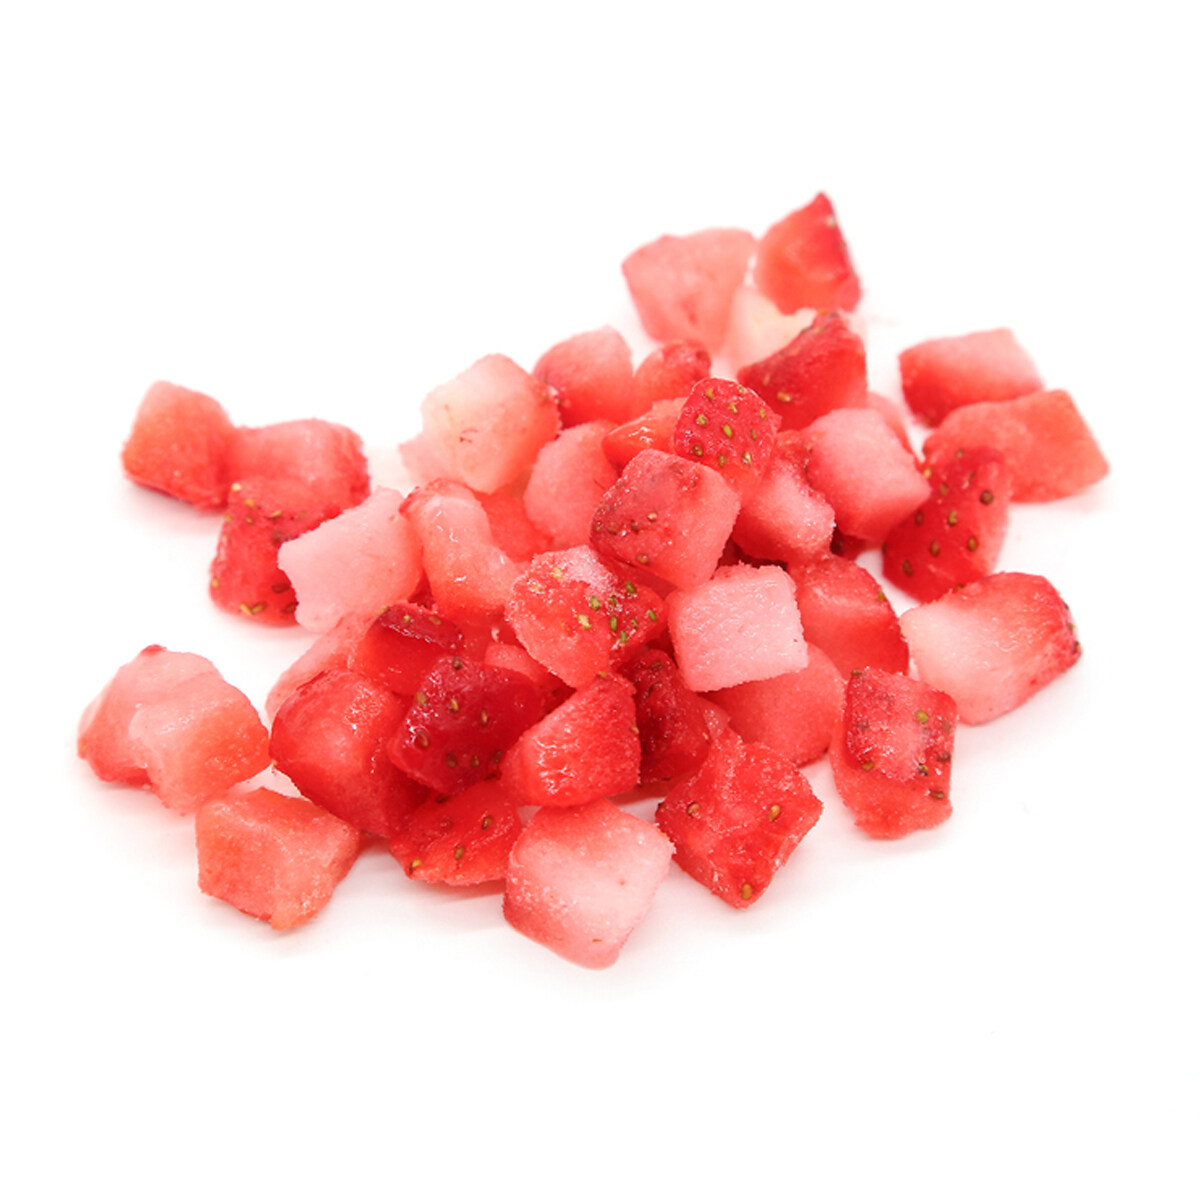 أفضل المورد الجديد حزمة محاصيل كبيرة في IQF Frozen Strawberry R7 25-37mm